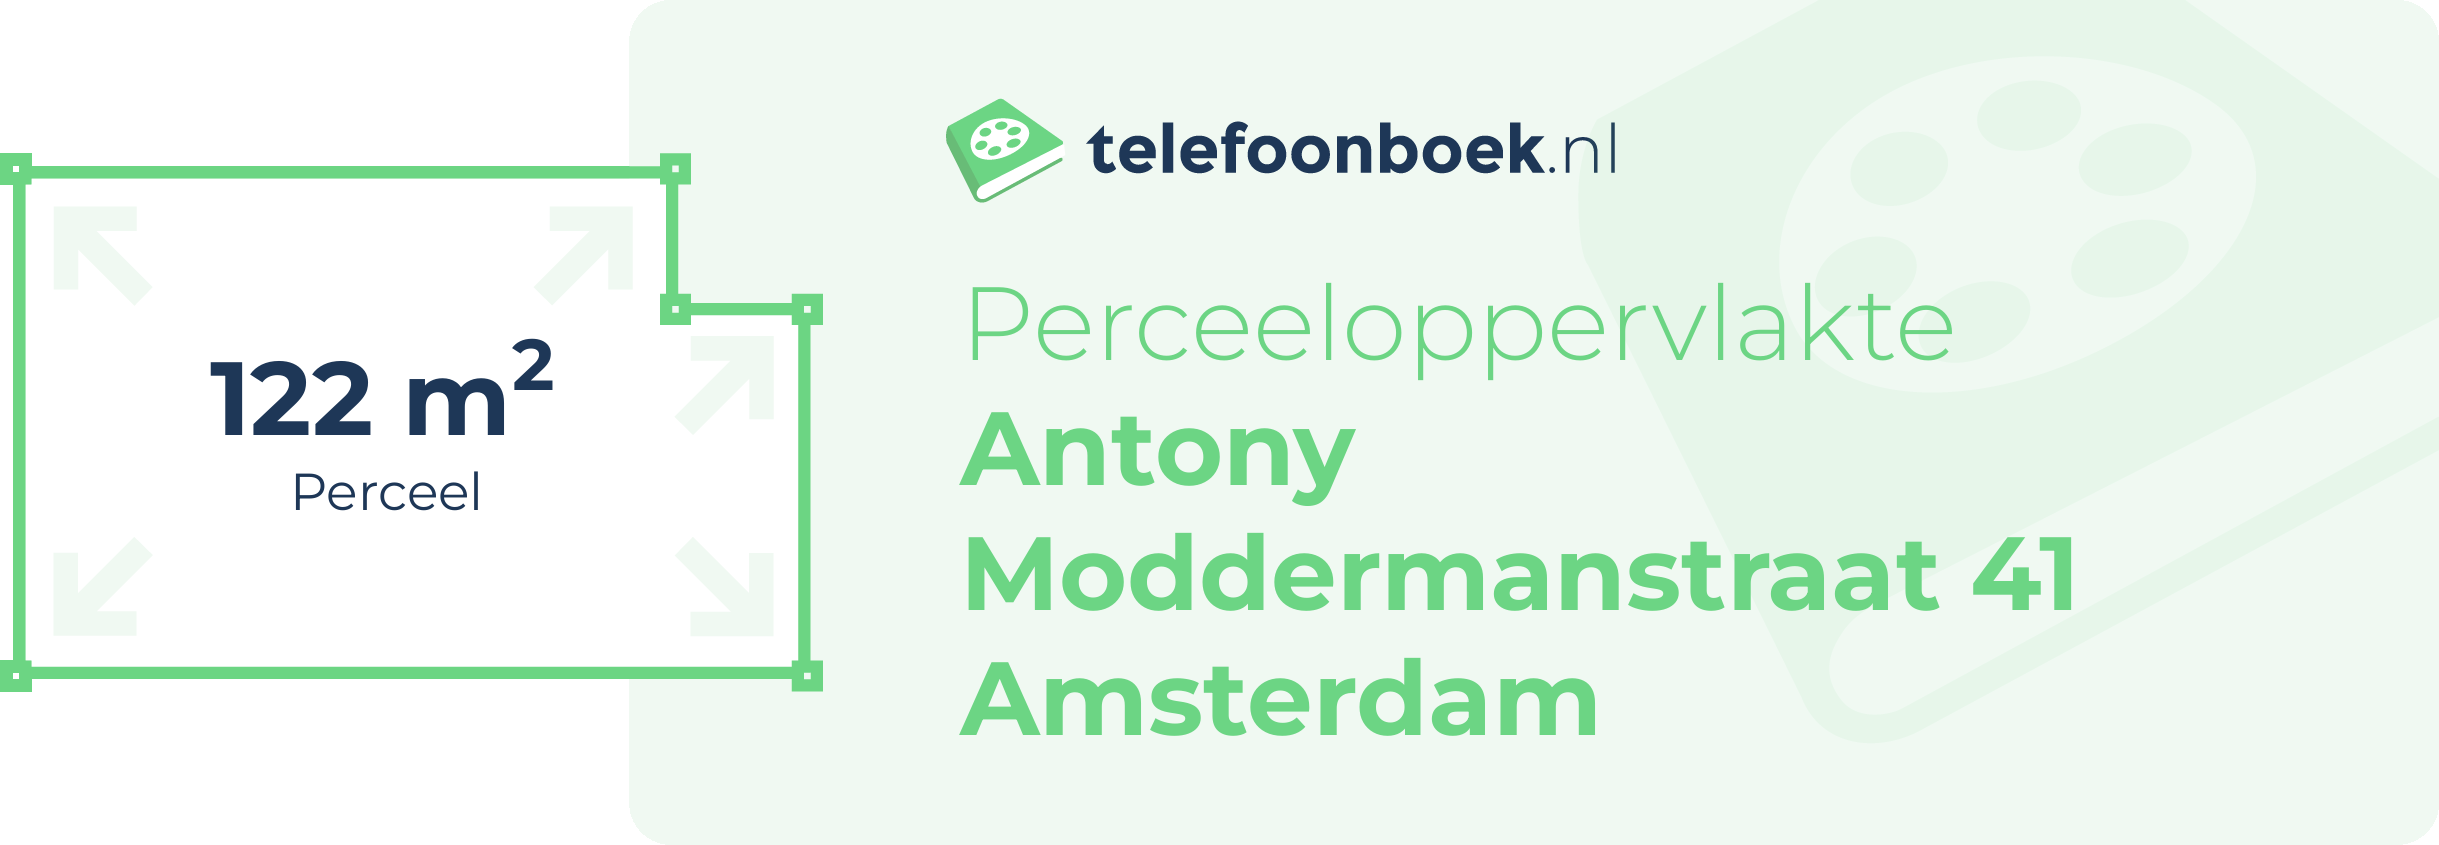 Perceeloppervlakte Antony Moddermanstraat 41 Amsterdam